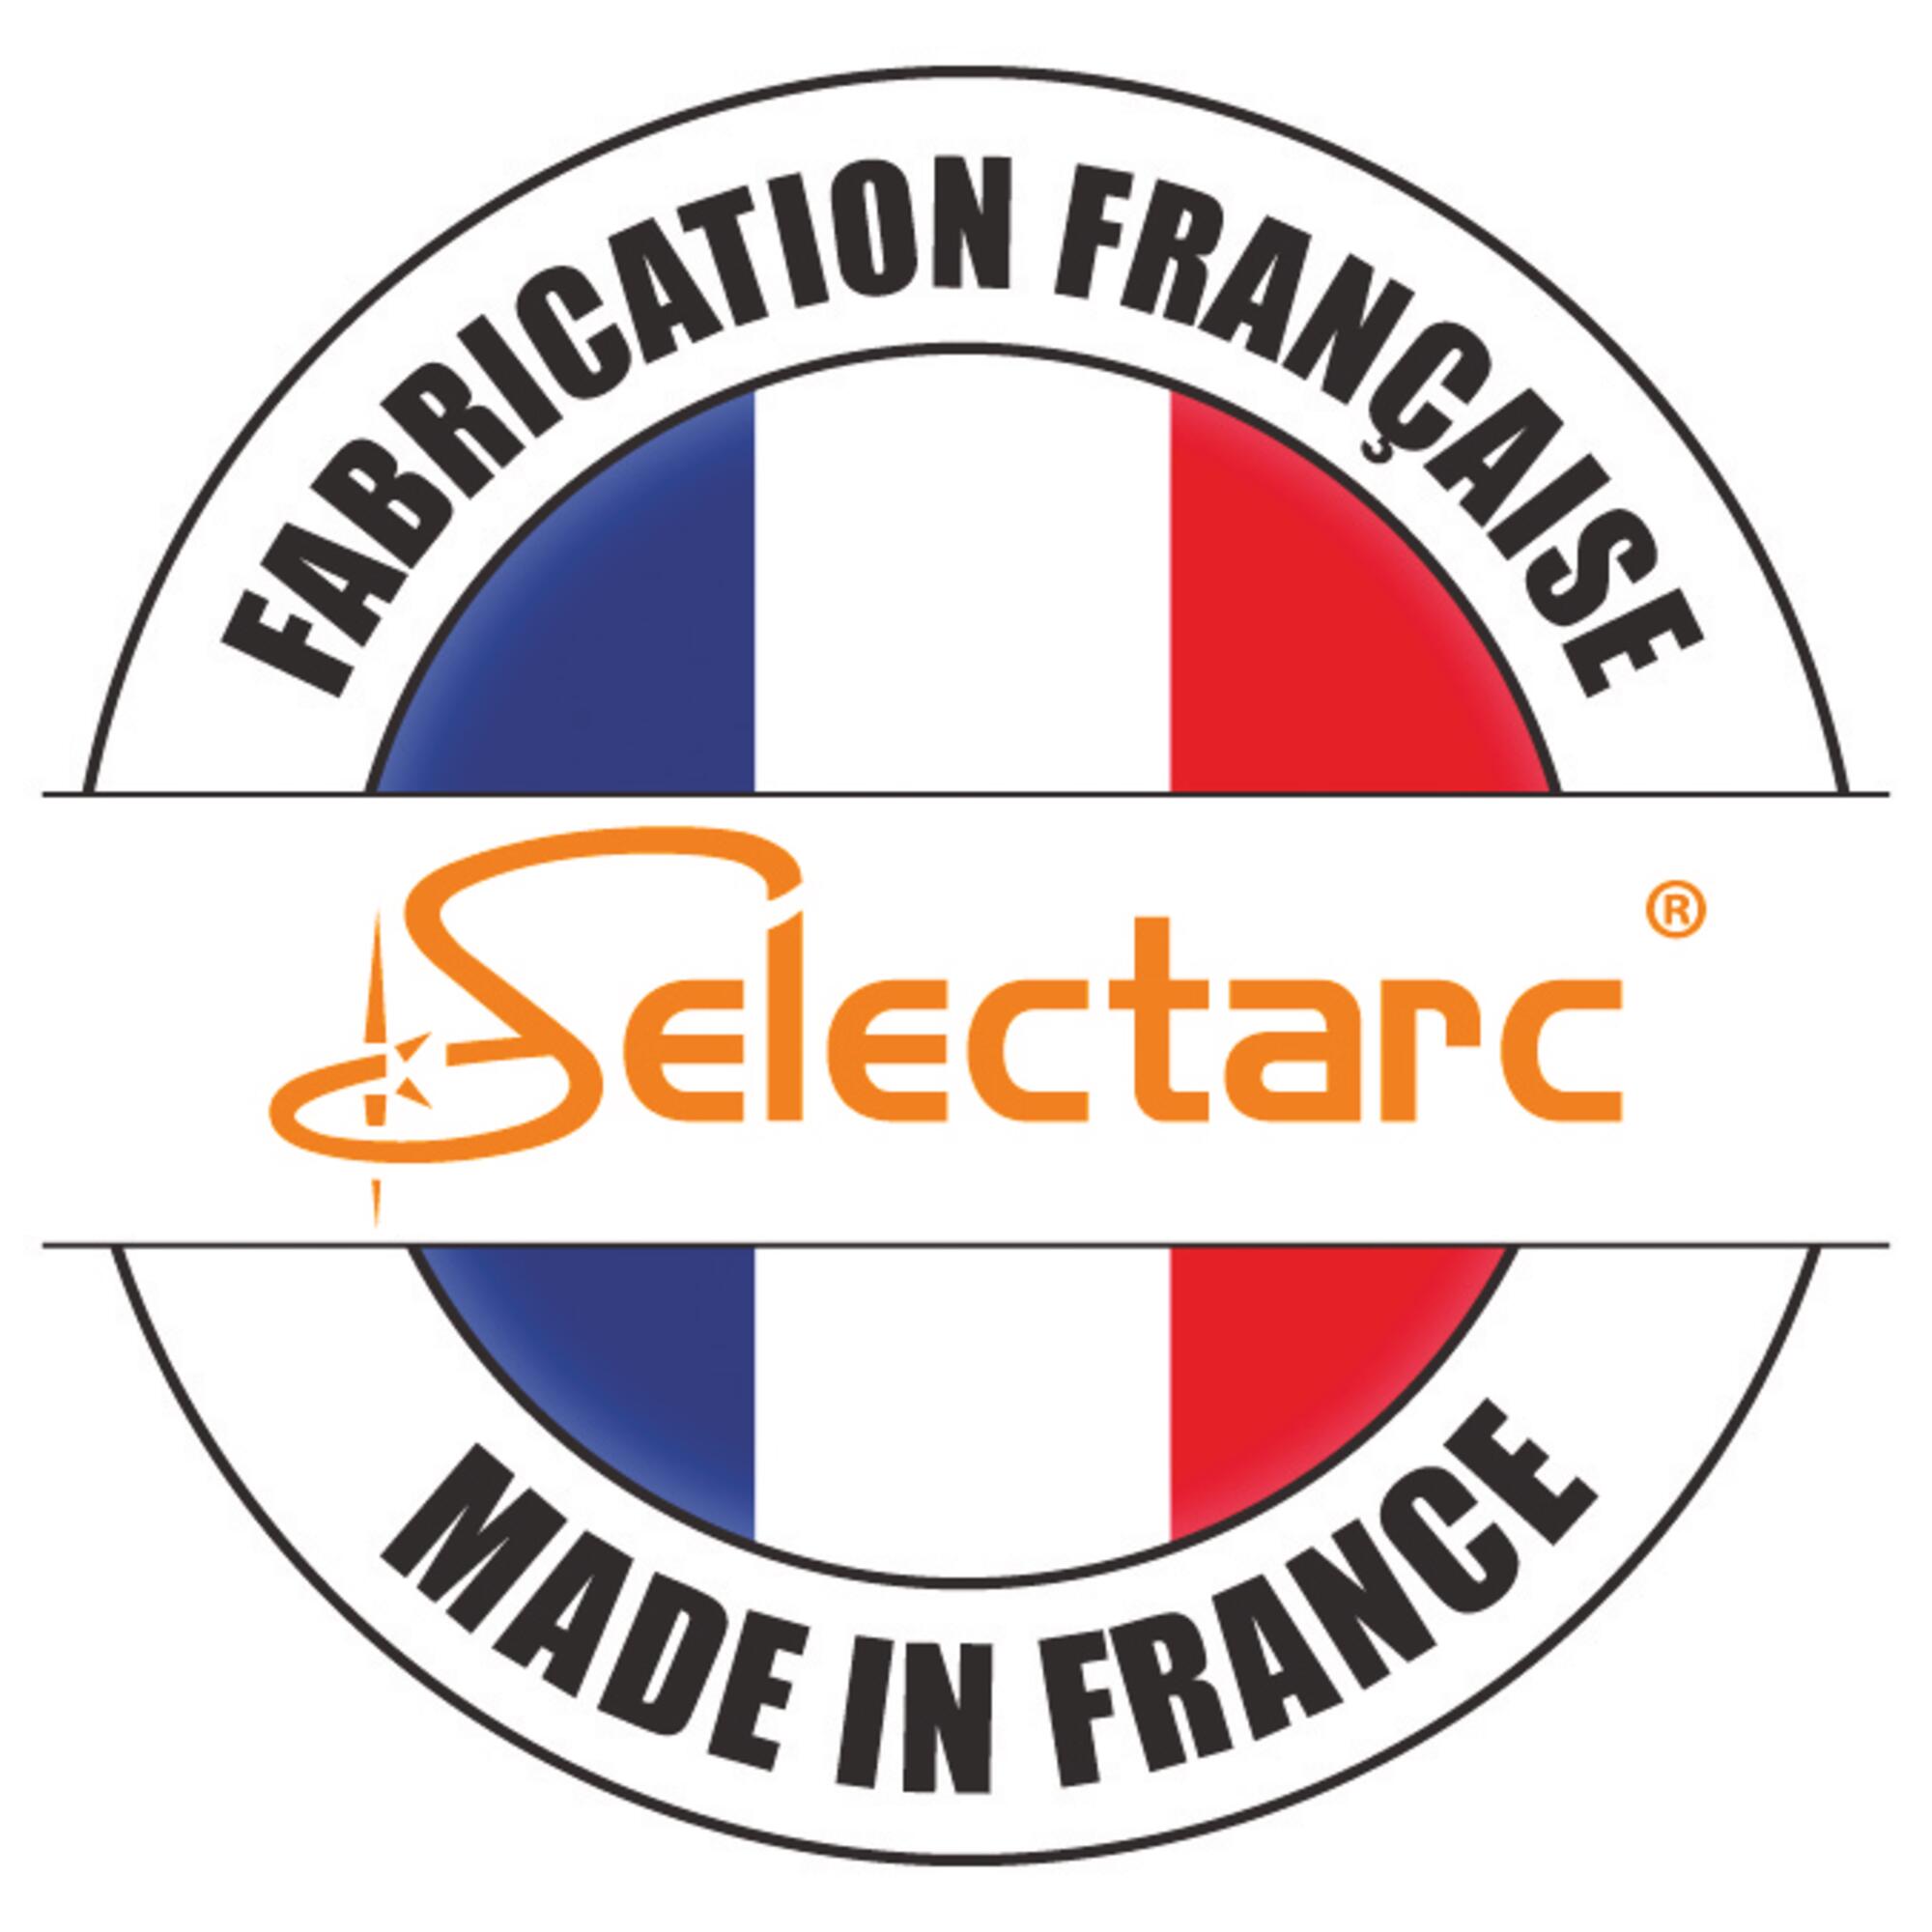 Fabrique-France-Selectarc